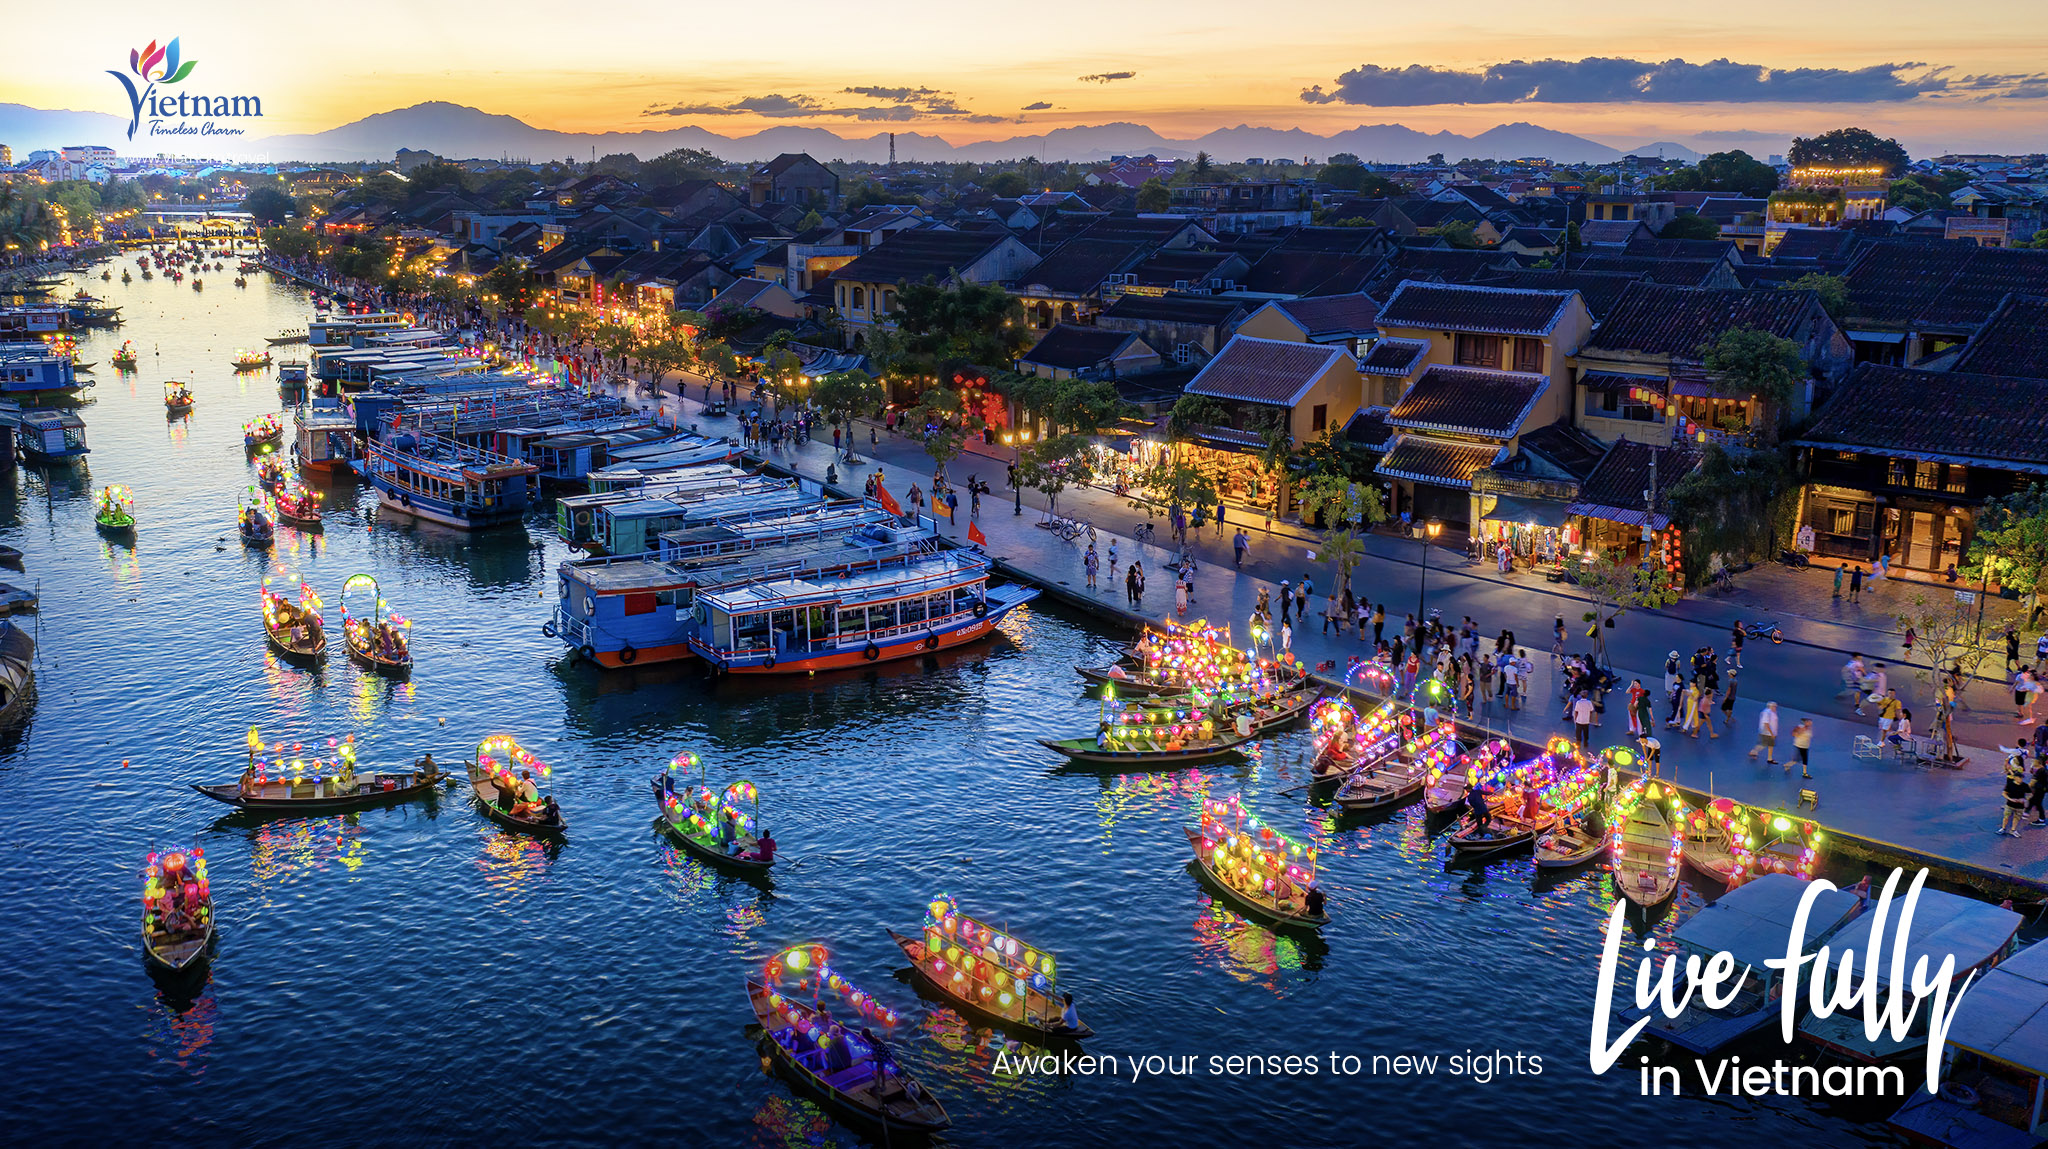 Du lịch Việt Nam “bội thu” với 48 giải thưởng hàng đầu châu Á năm 2022